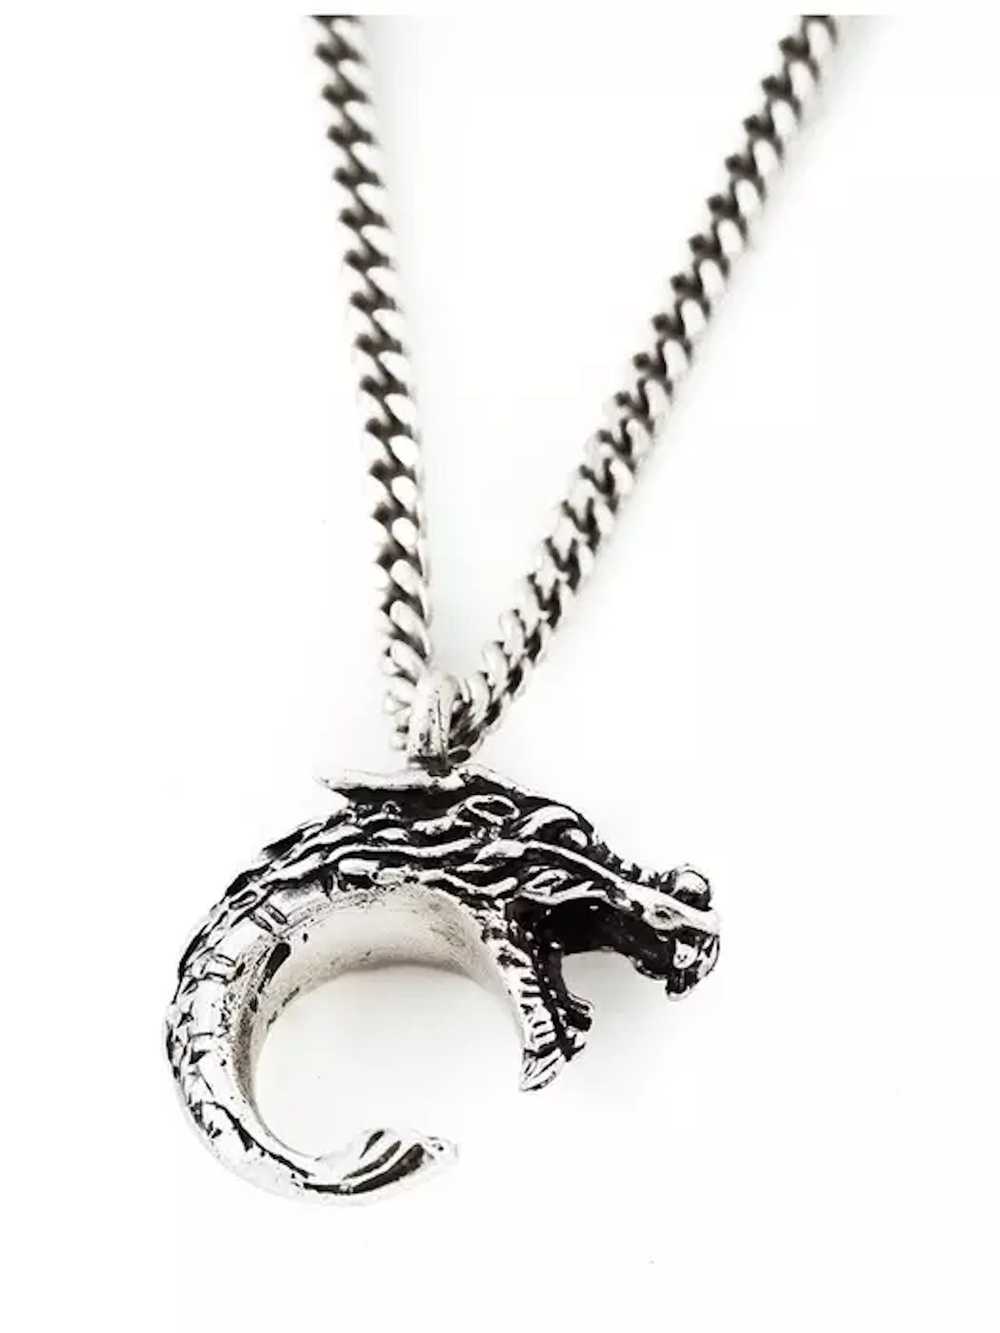 Saint Laurent Paris Rare Dragon Pendant Necklace - image 1